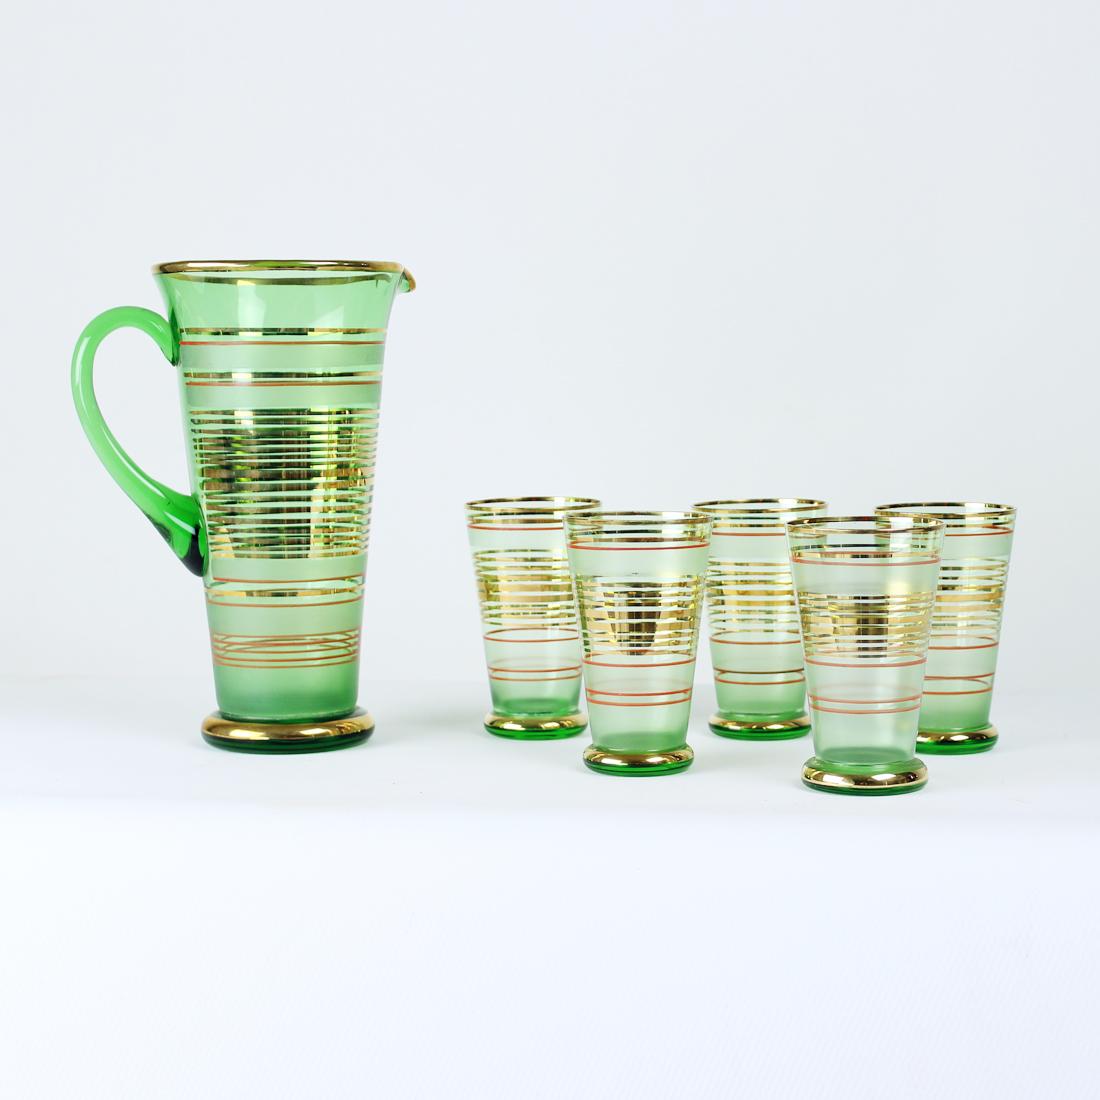 Magnifique ensemble de verres à boire et de pichets au design moderne du milieu du siècle dernier. Produit en Tchécoslovaquie par Borske SkLO, syndicat du verre en 1968. L'ensemble est dans la plus belle finition avec des finitions vertes, rouges et